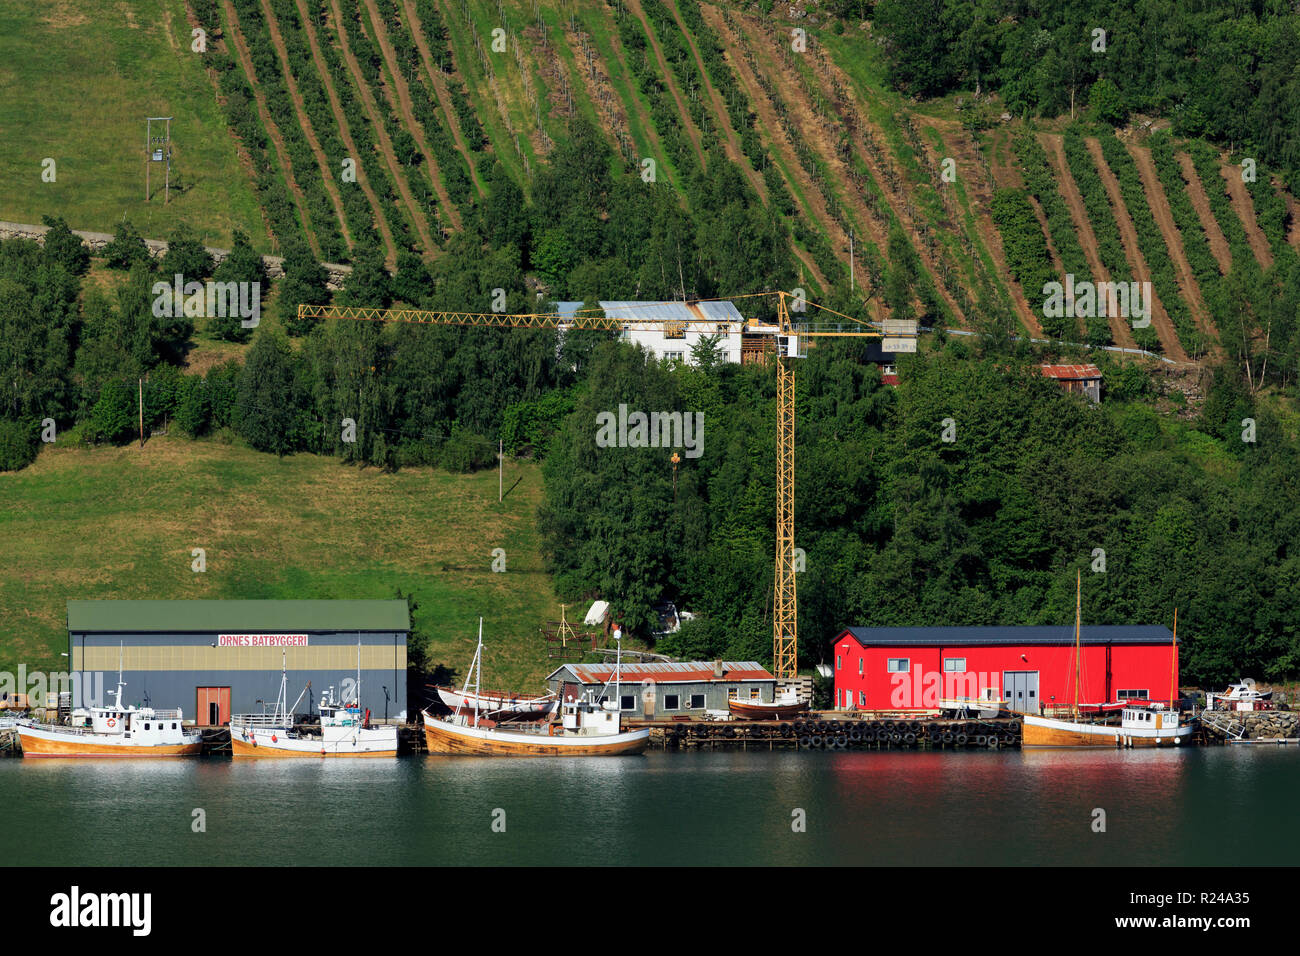 Boatyard, Urnes Village, Lustrafjorden, Sogn og Fjordane County, Norway, Scandinavia, Europe Stock Photo